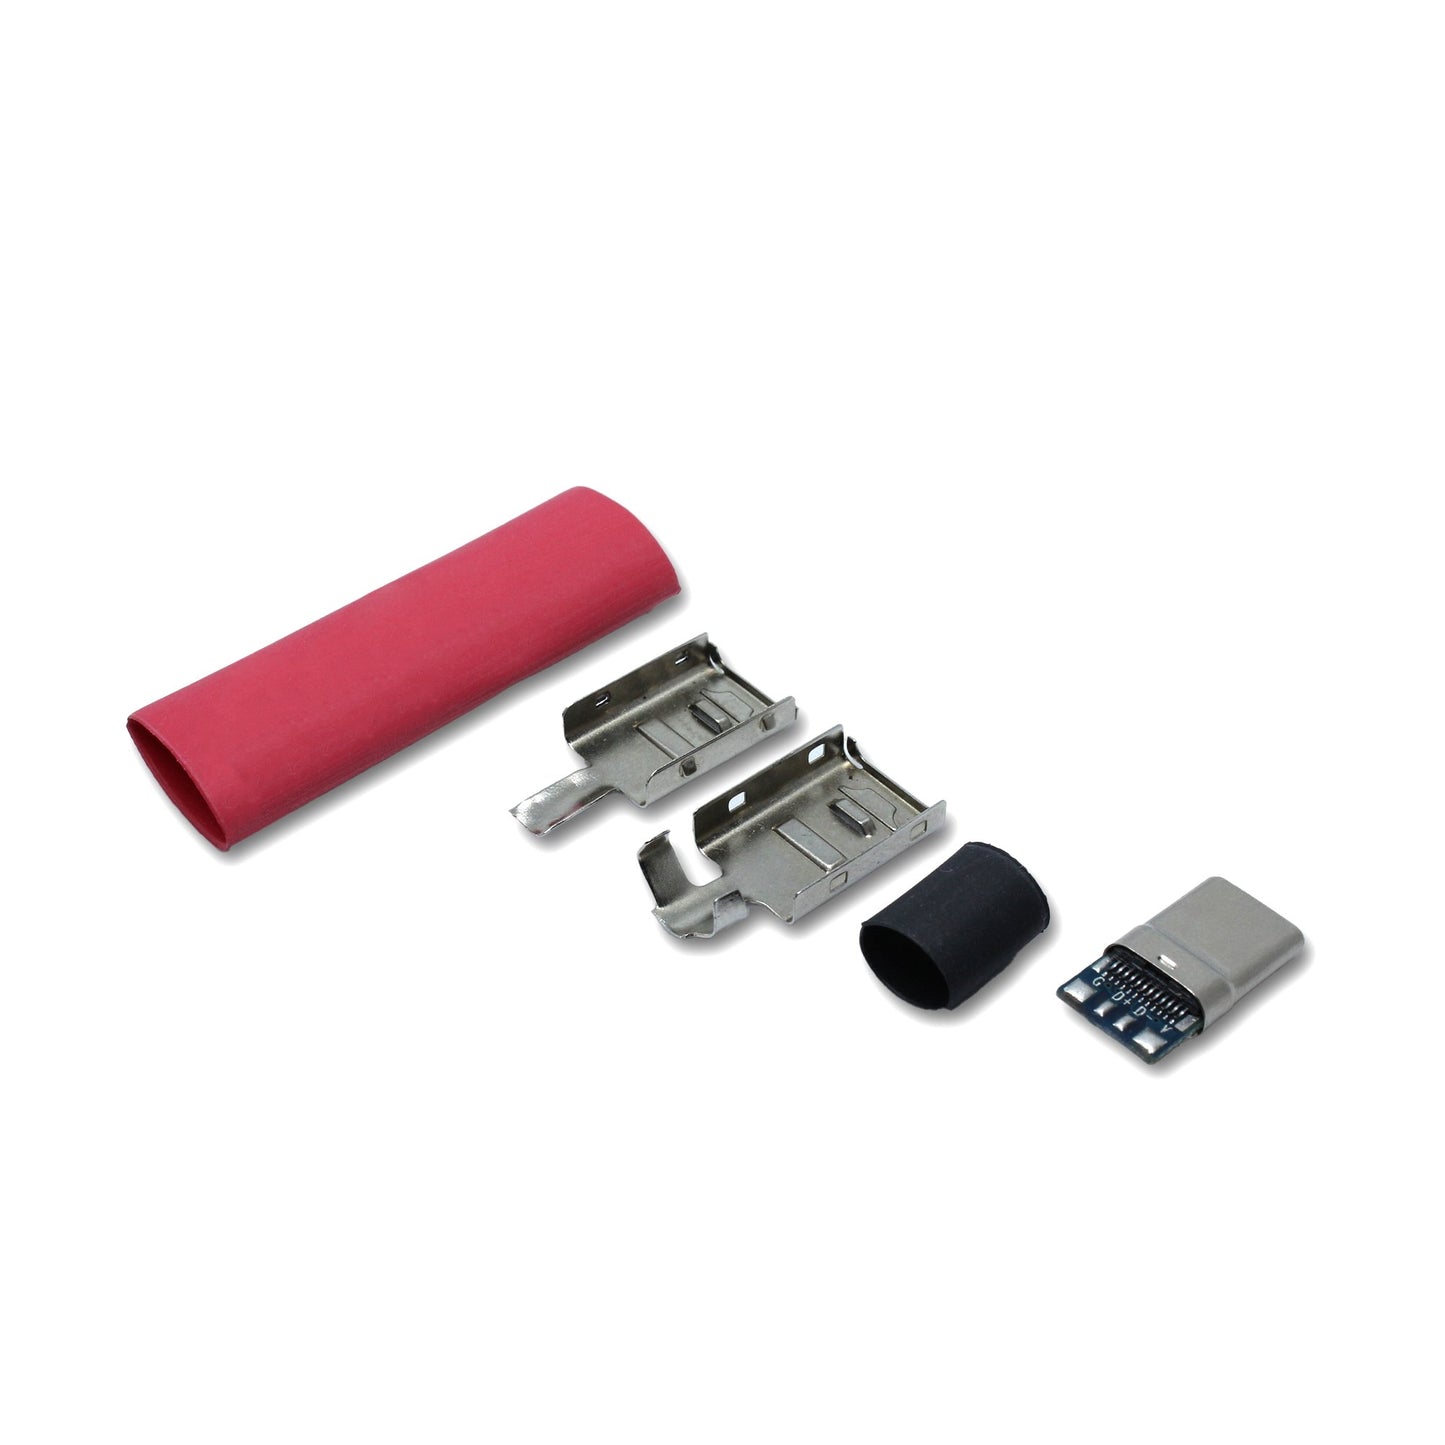 EIn recable USB C Host Stecker Set mit Schrumpfschlauch in der Farbe rot